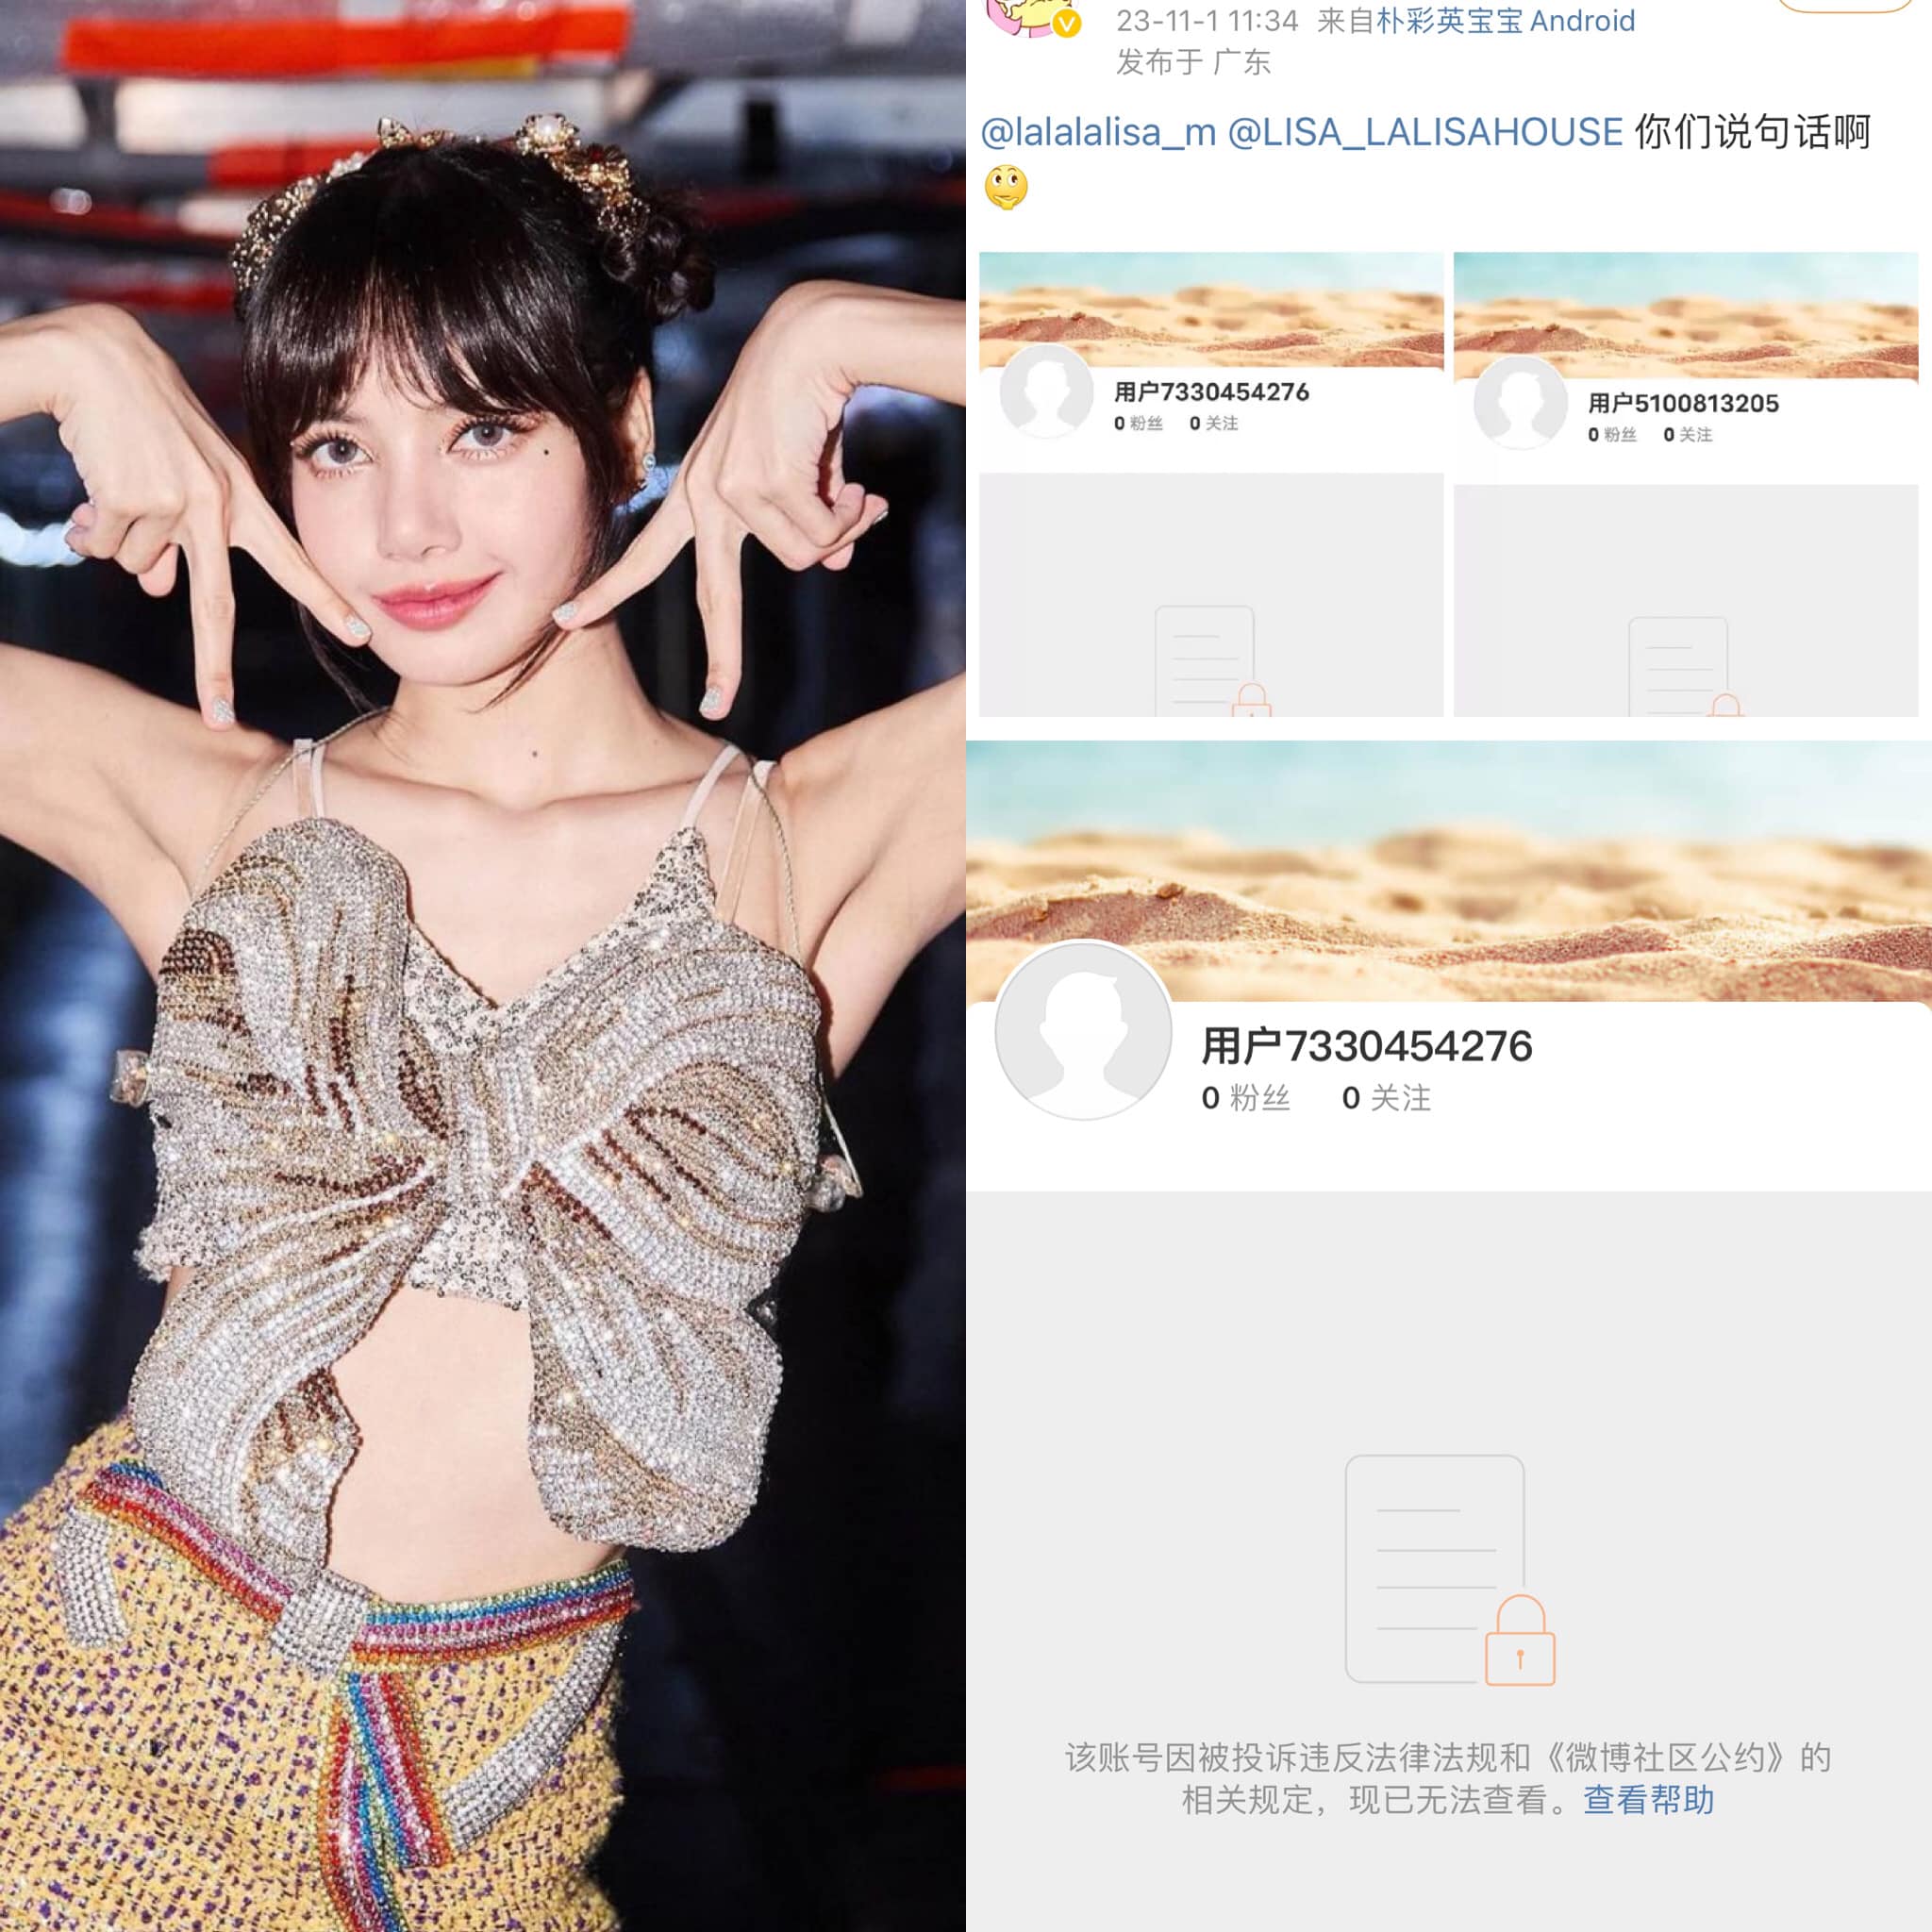 Tài khoản Weibo của Lisa đã 'bay màu'